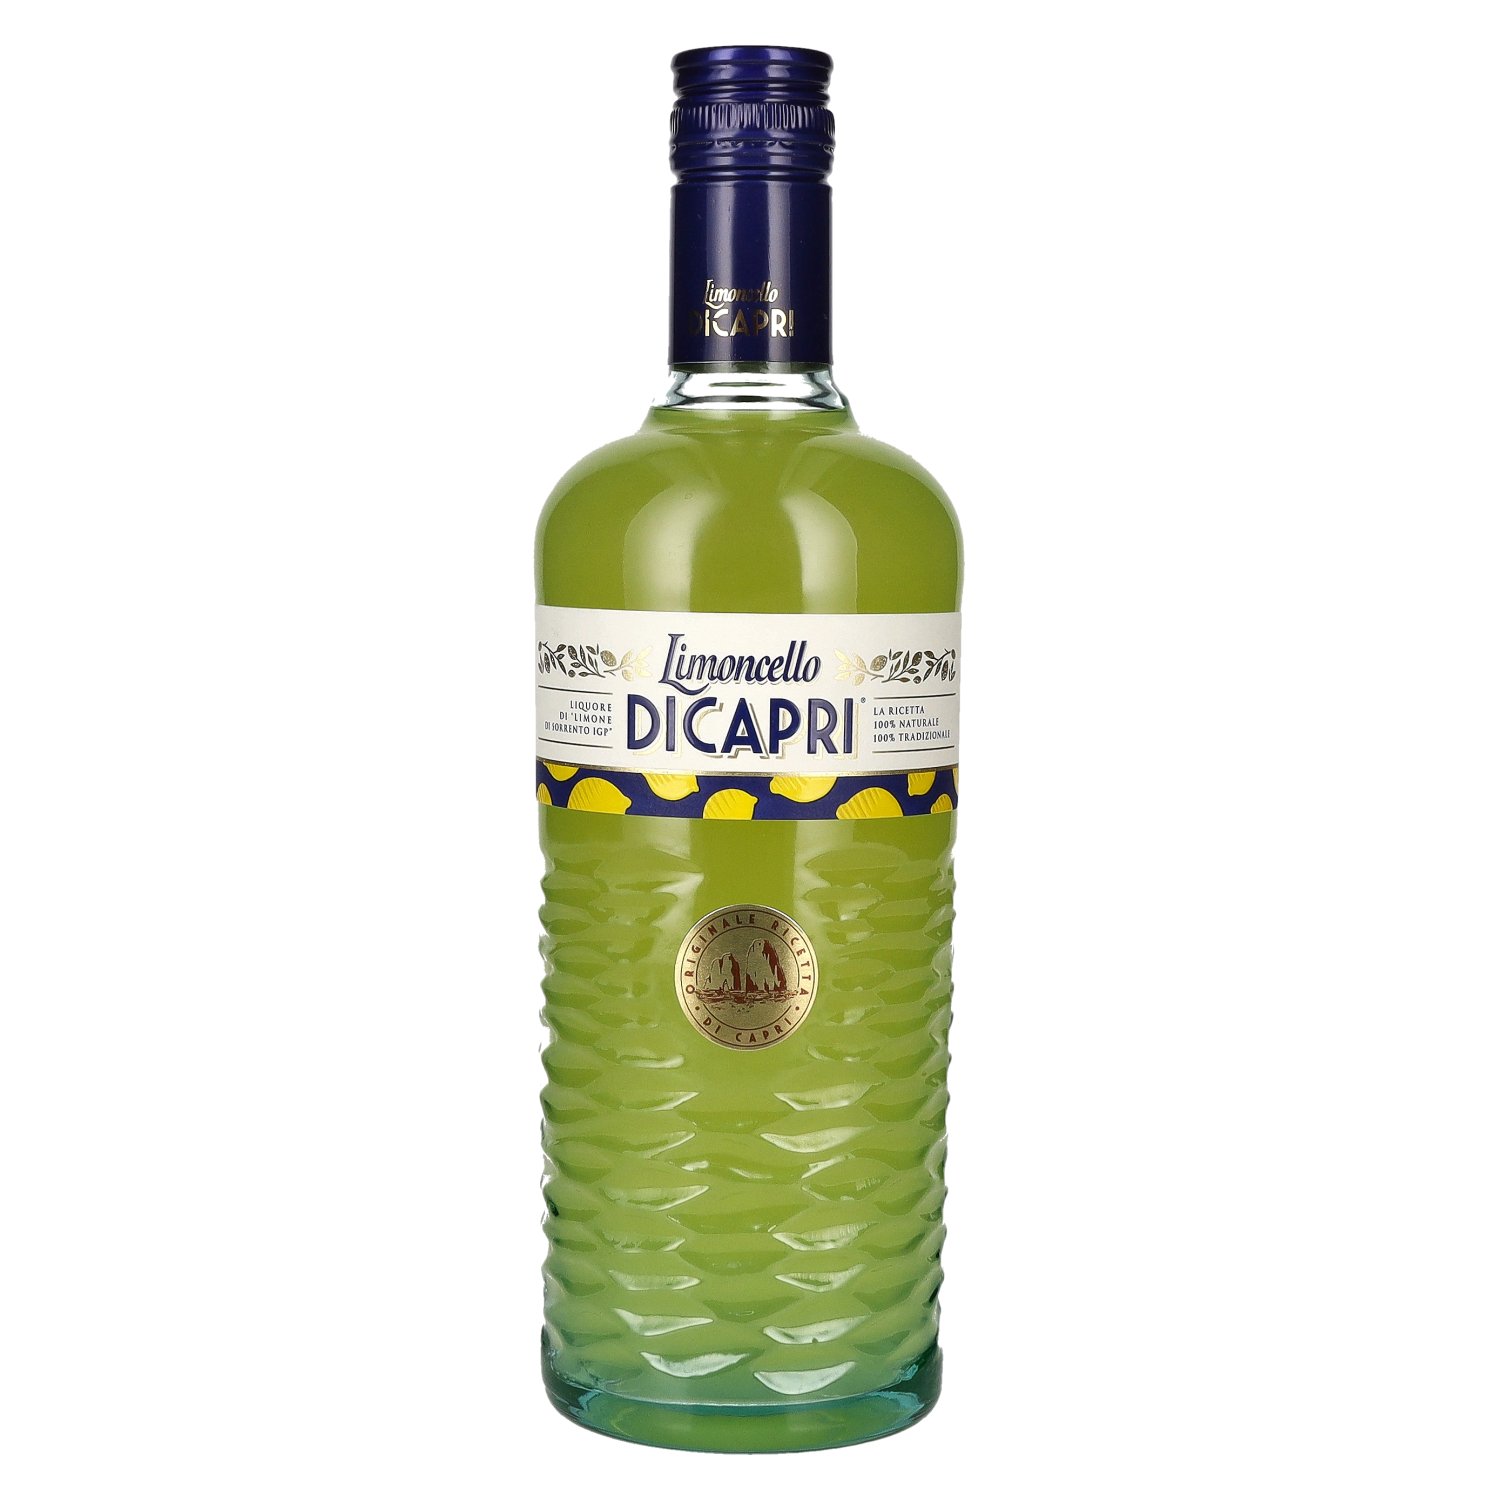 Limoncello di Capri Originale Ricetta di Capri 30% Vol. 0,7l